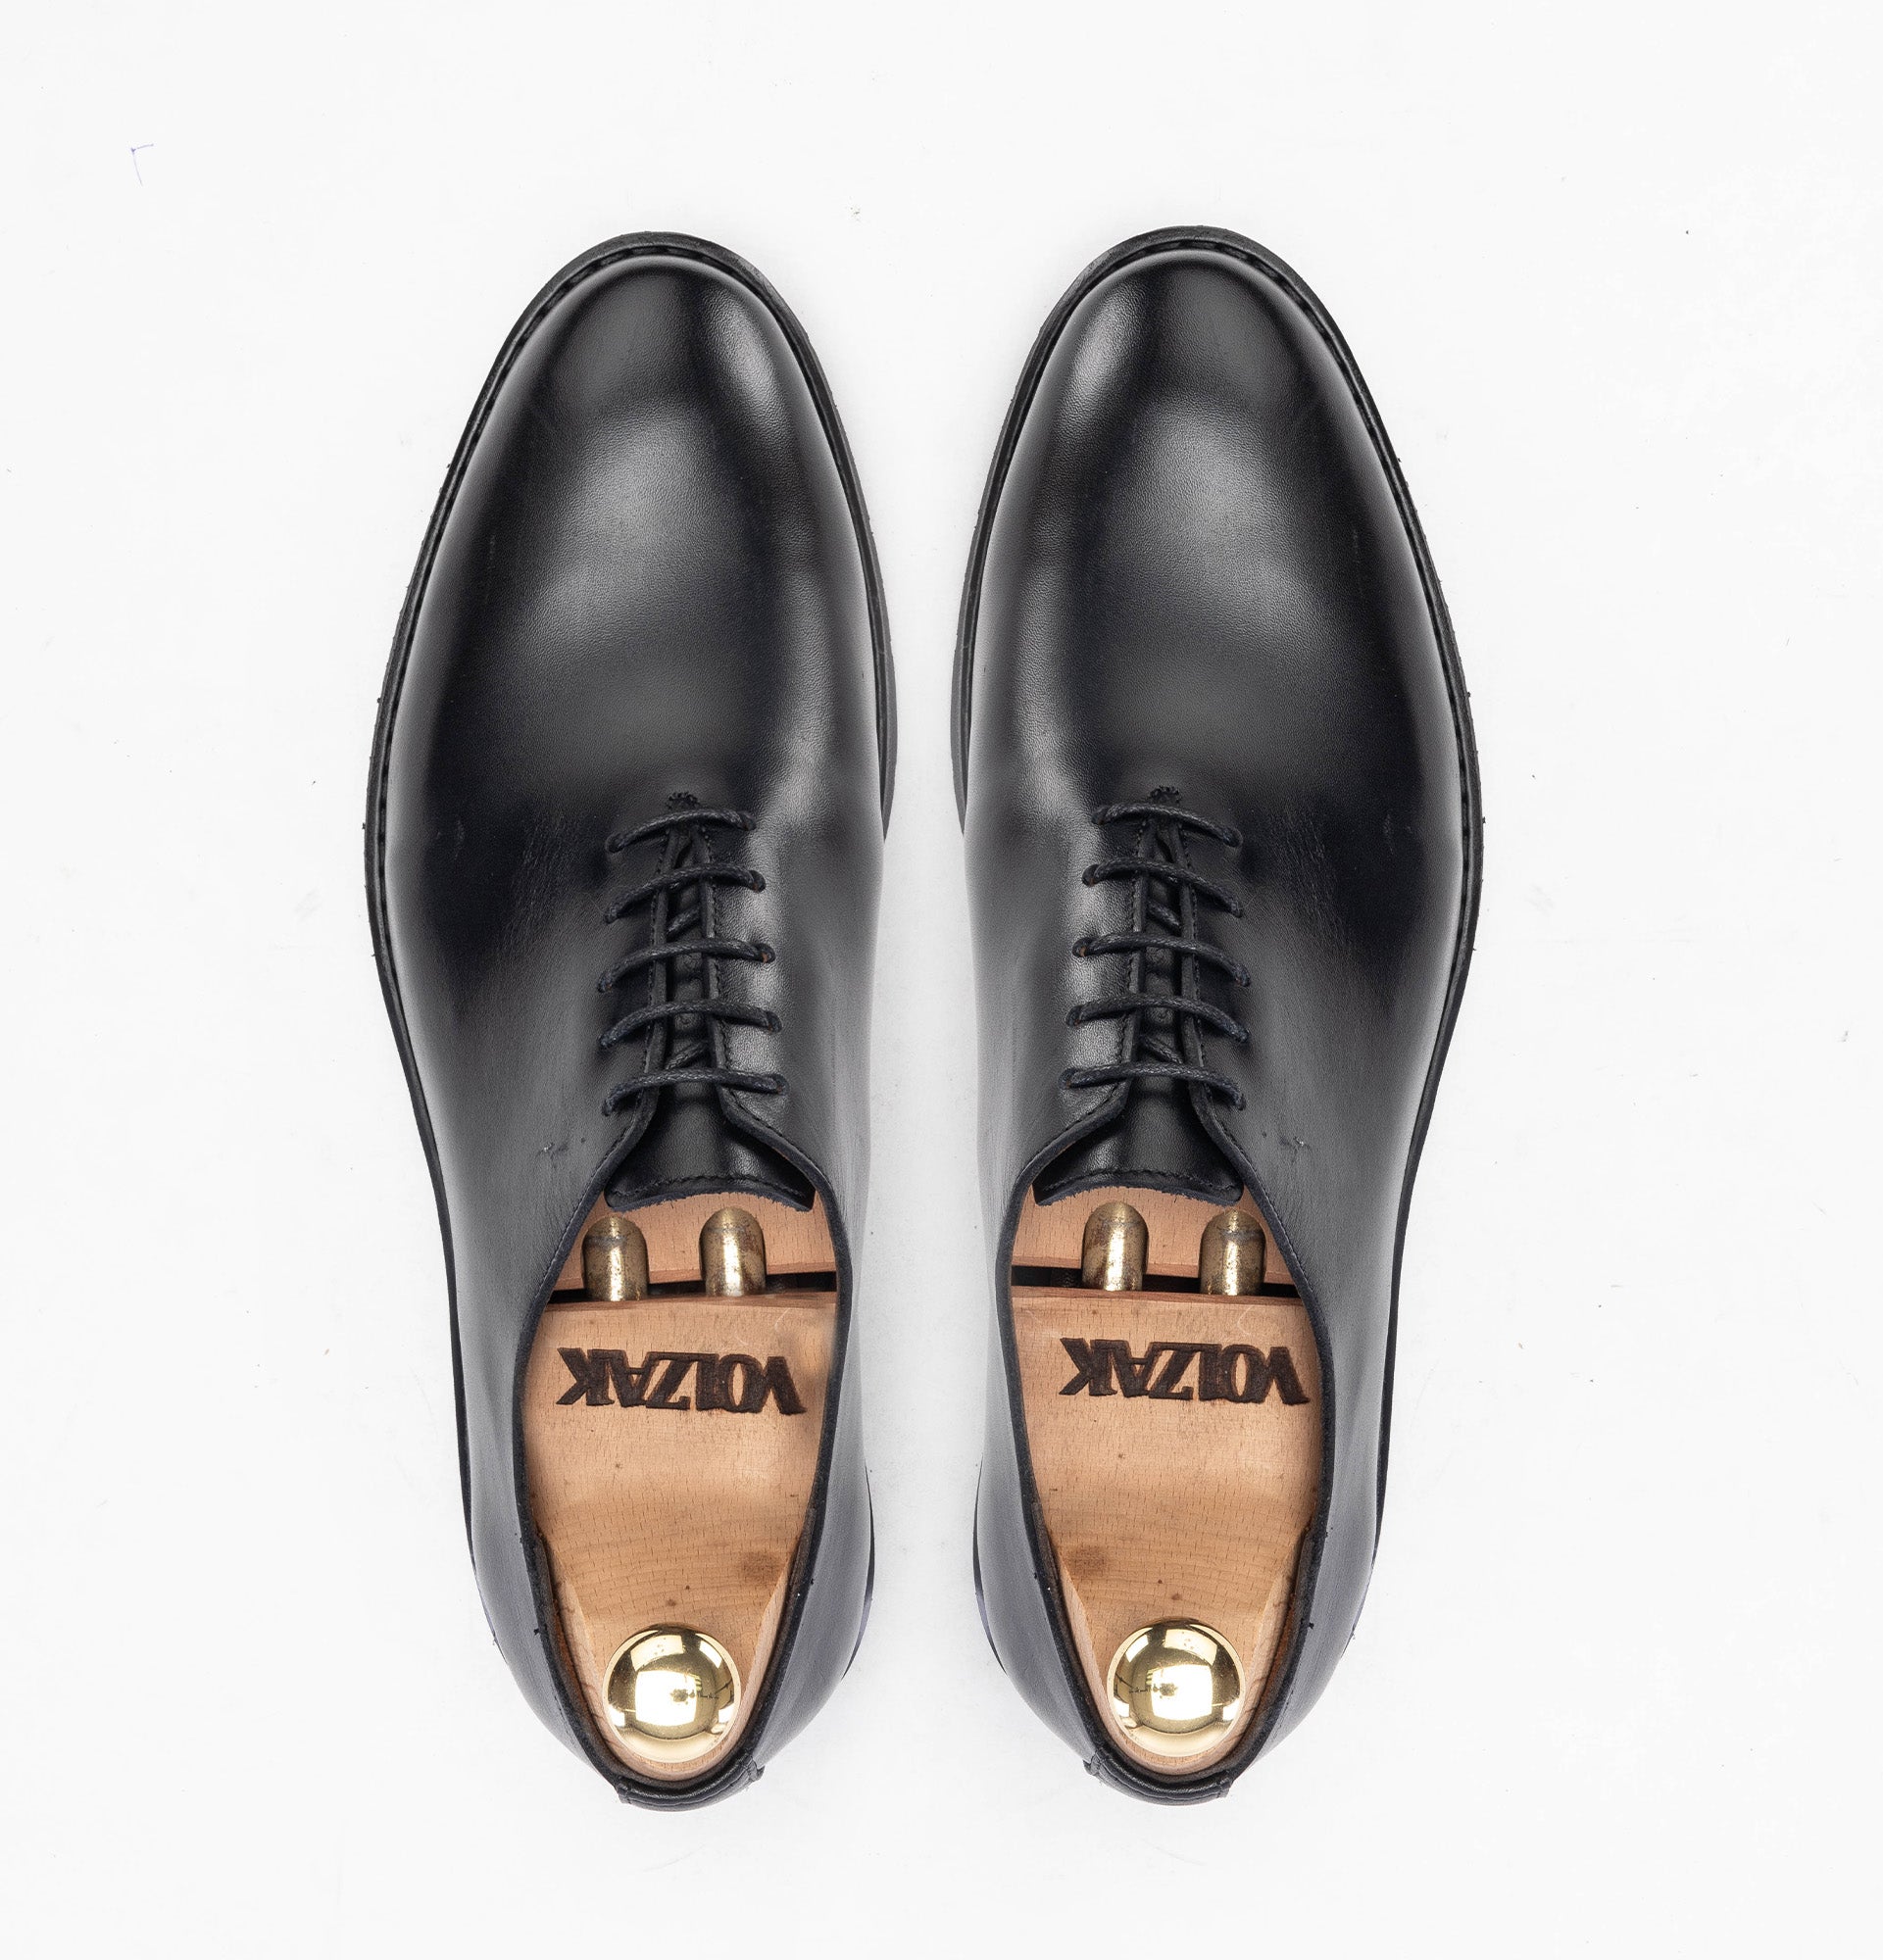 '''5161 chaussure cuir noir